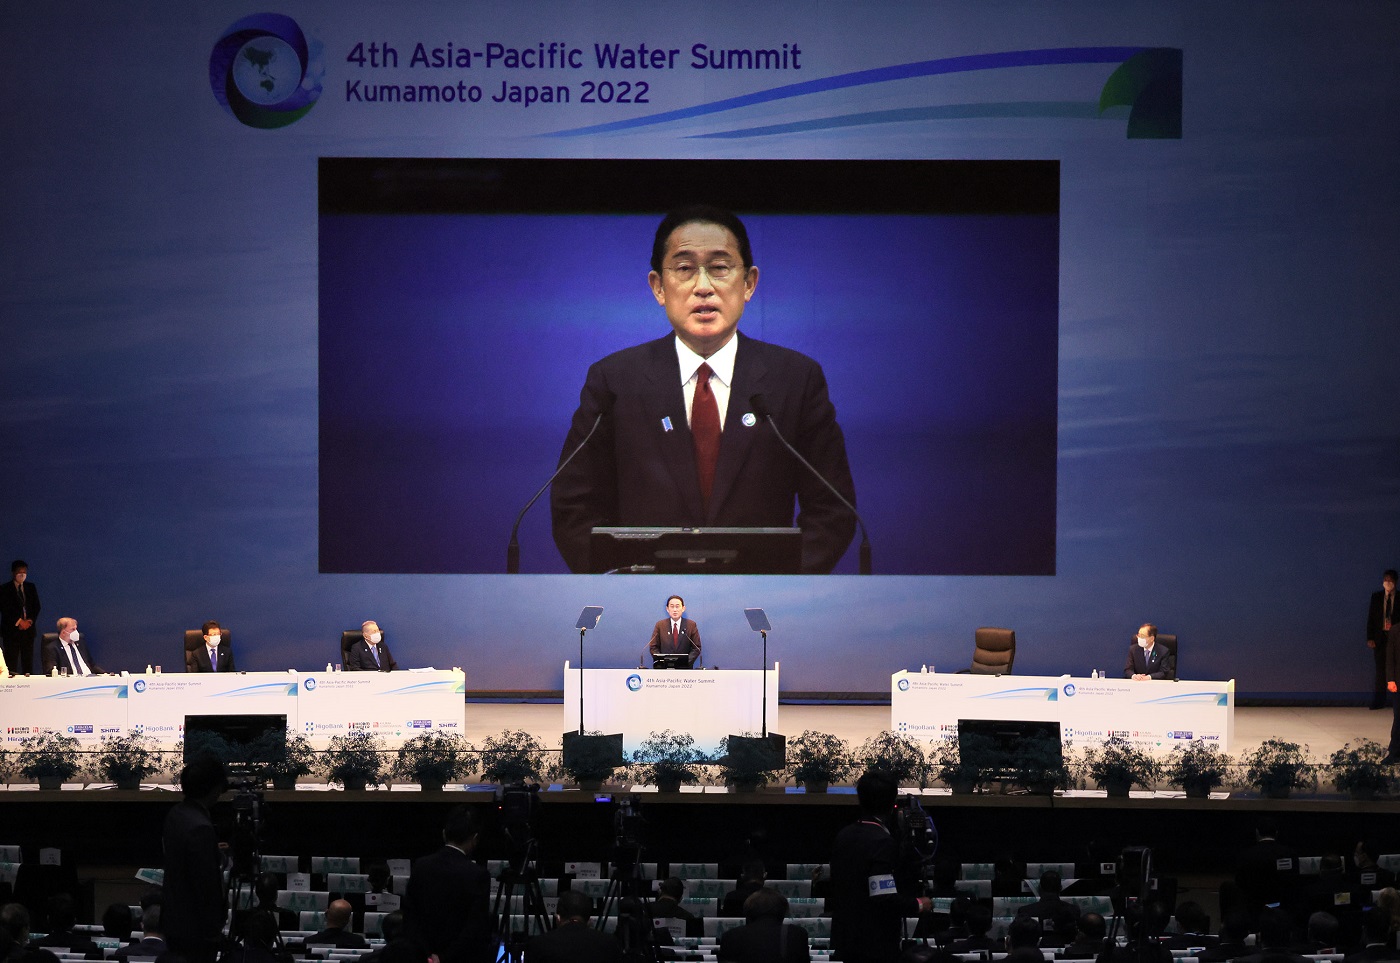 亚太水峰会以及与各国首脑的会谈等